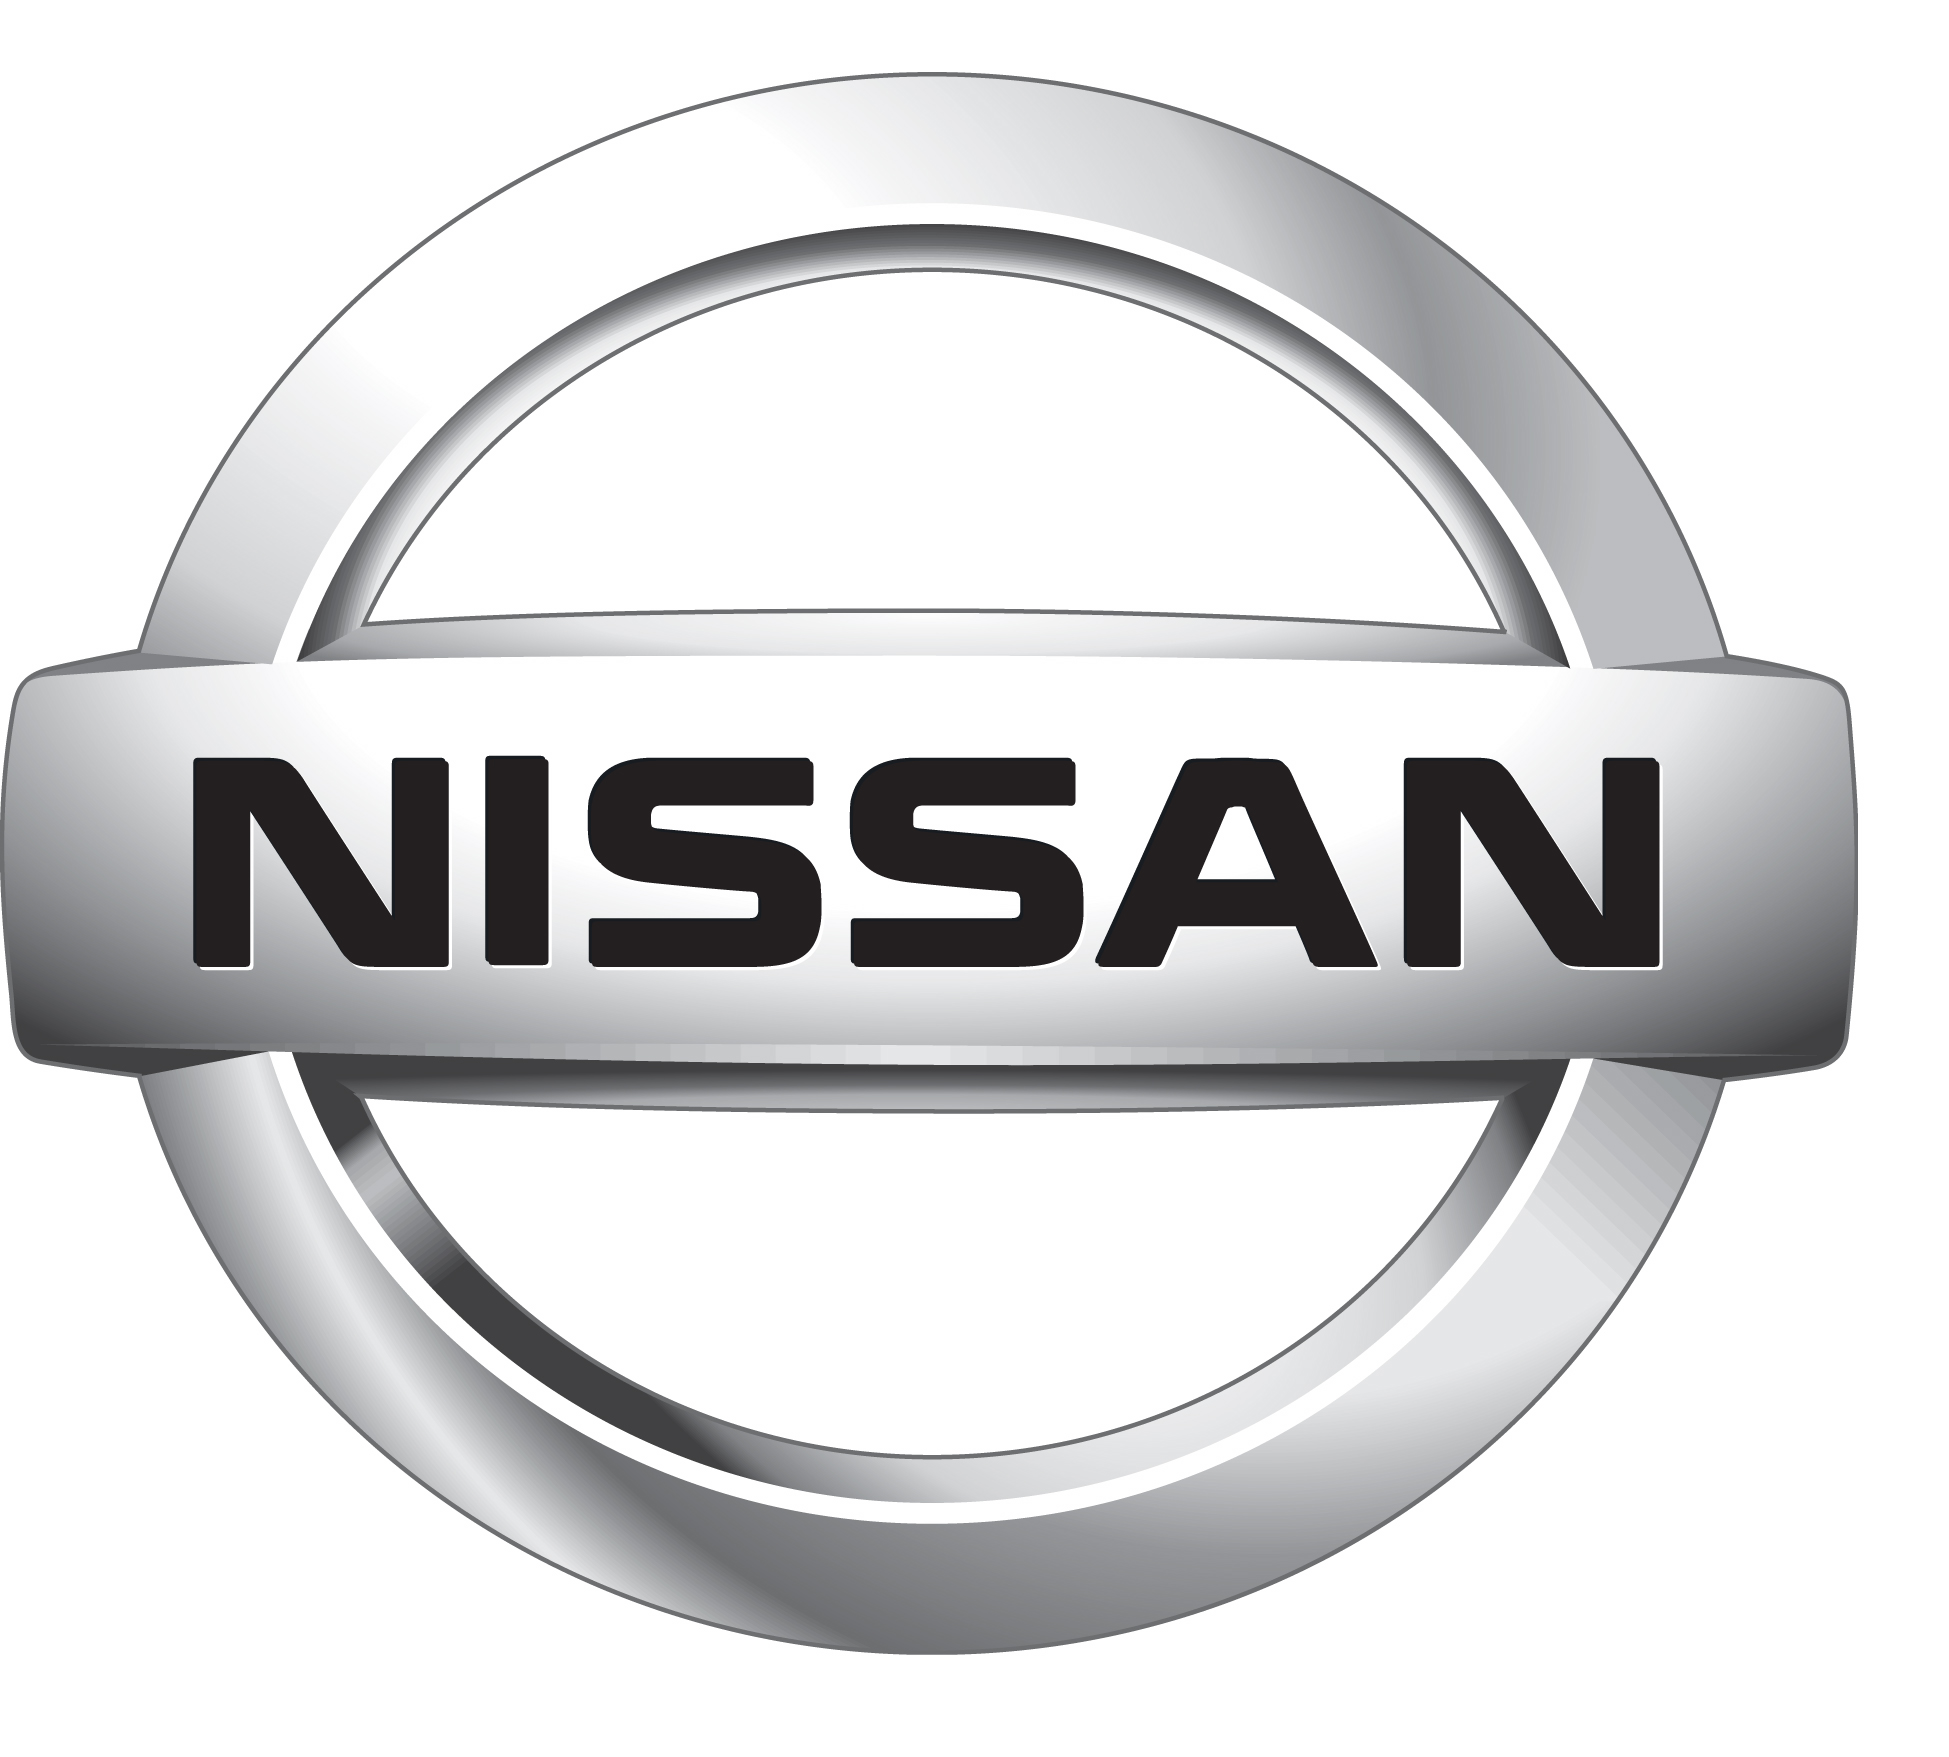 nissan-logo-AT-1